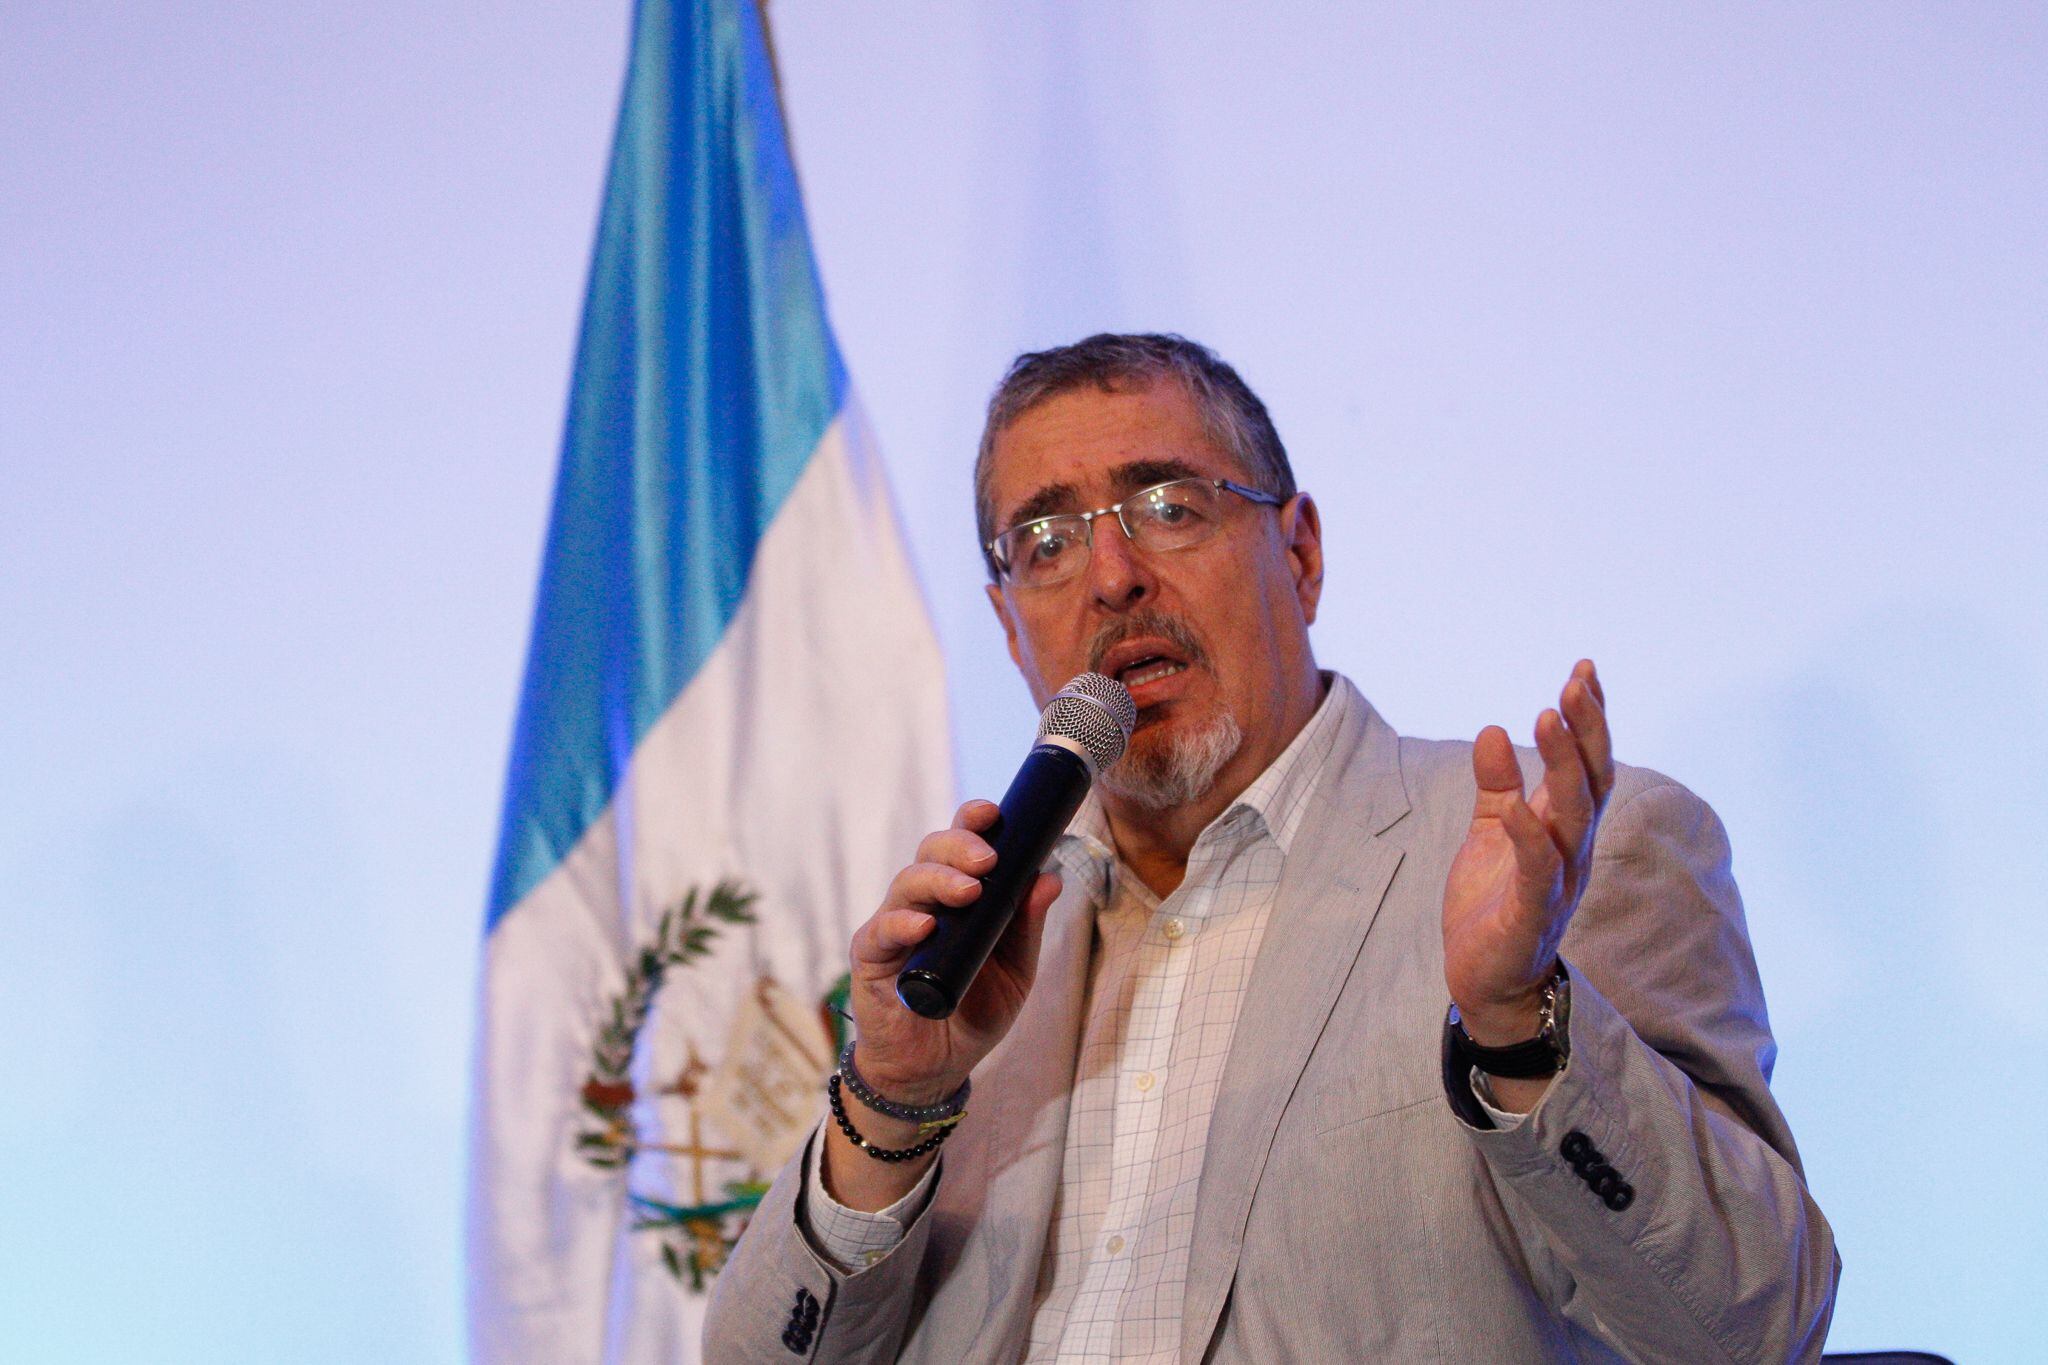 El presidente electo de Guatemala, Bernardo Arévalo de León. Imagen de archivo.
EFE/David Toro
